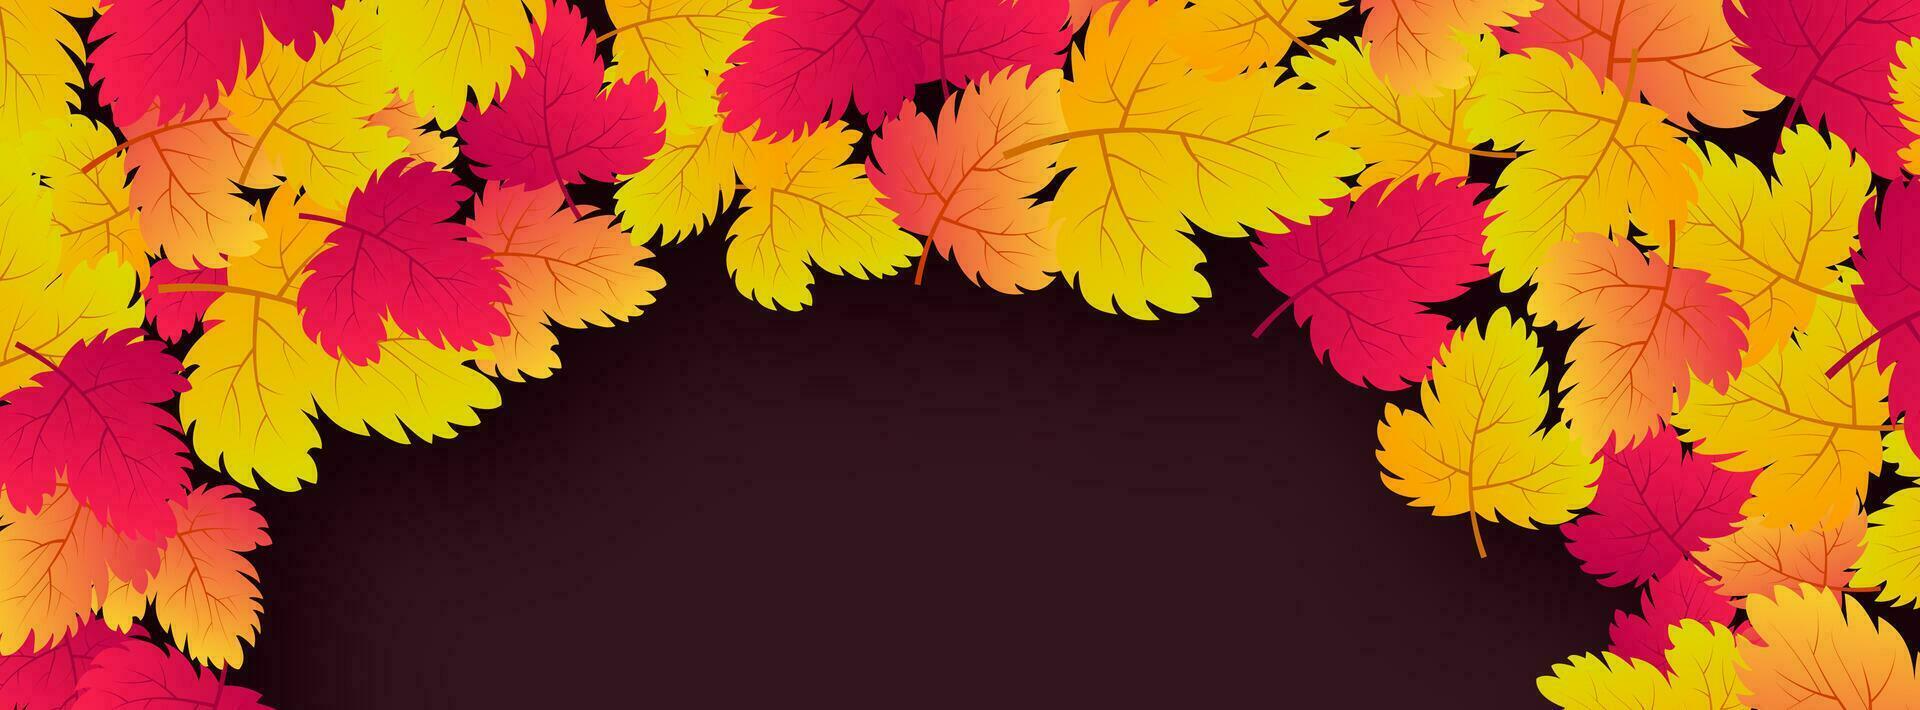 höst bakgrund med lönn gul löv och plats för text. baner design för falla säsong baner eller affisch. vektor illustration